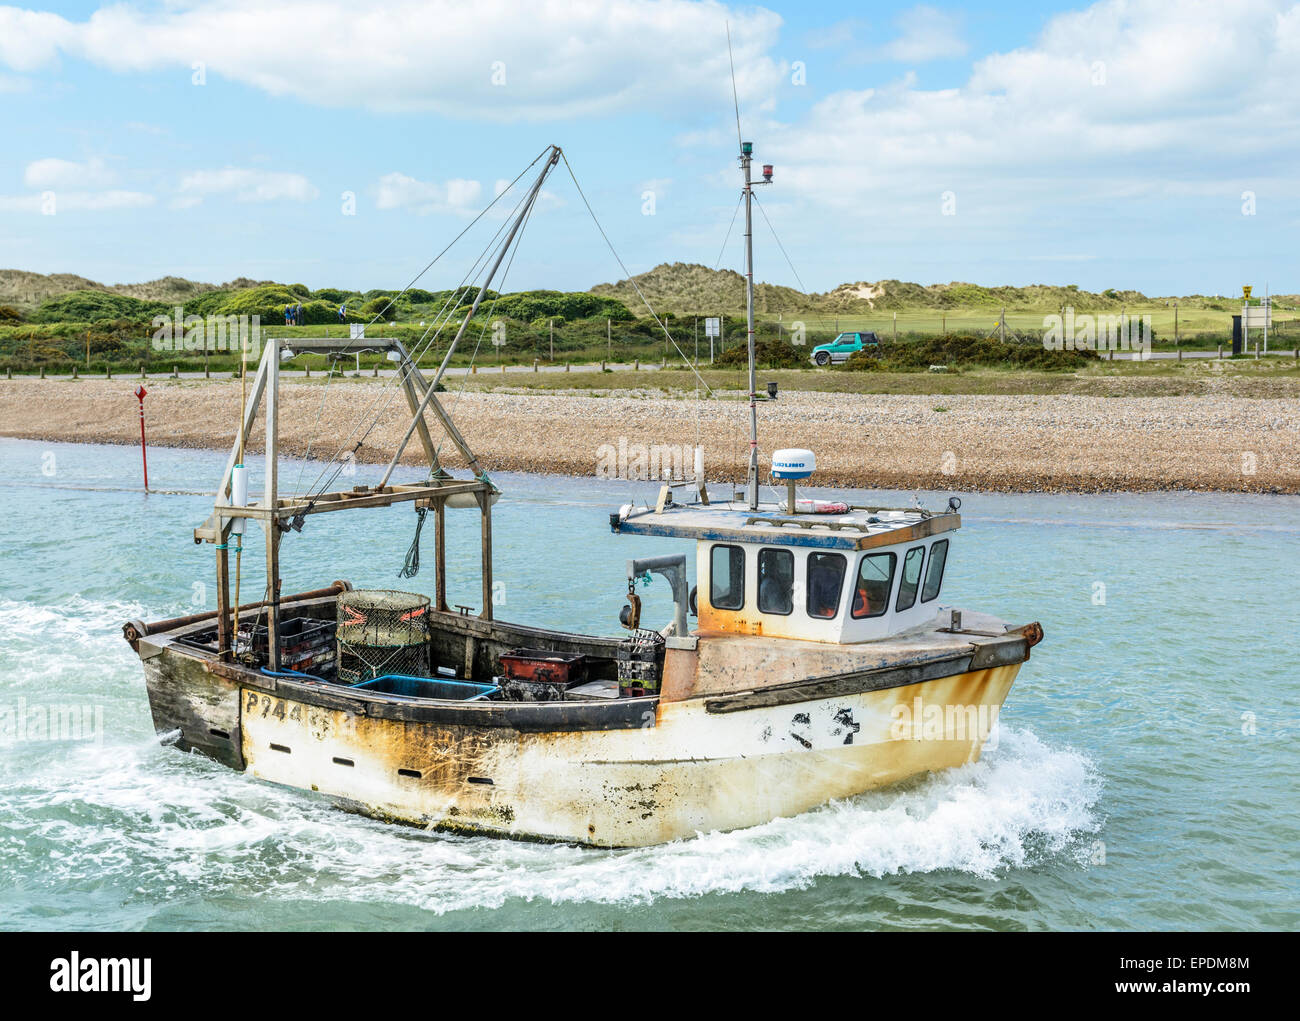 Rusty ancien bateau de pêche sur la rivière Arun à Littlehampton, West Sussex, Angleterre, Royaume-Uni. Banque D'Images